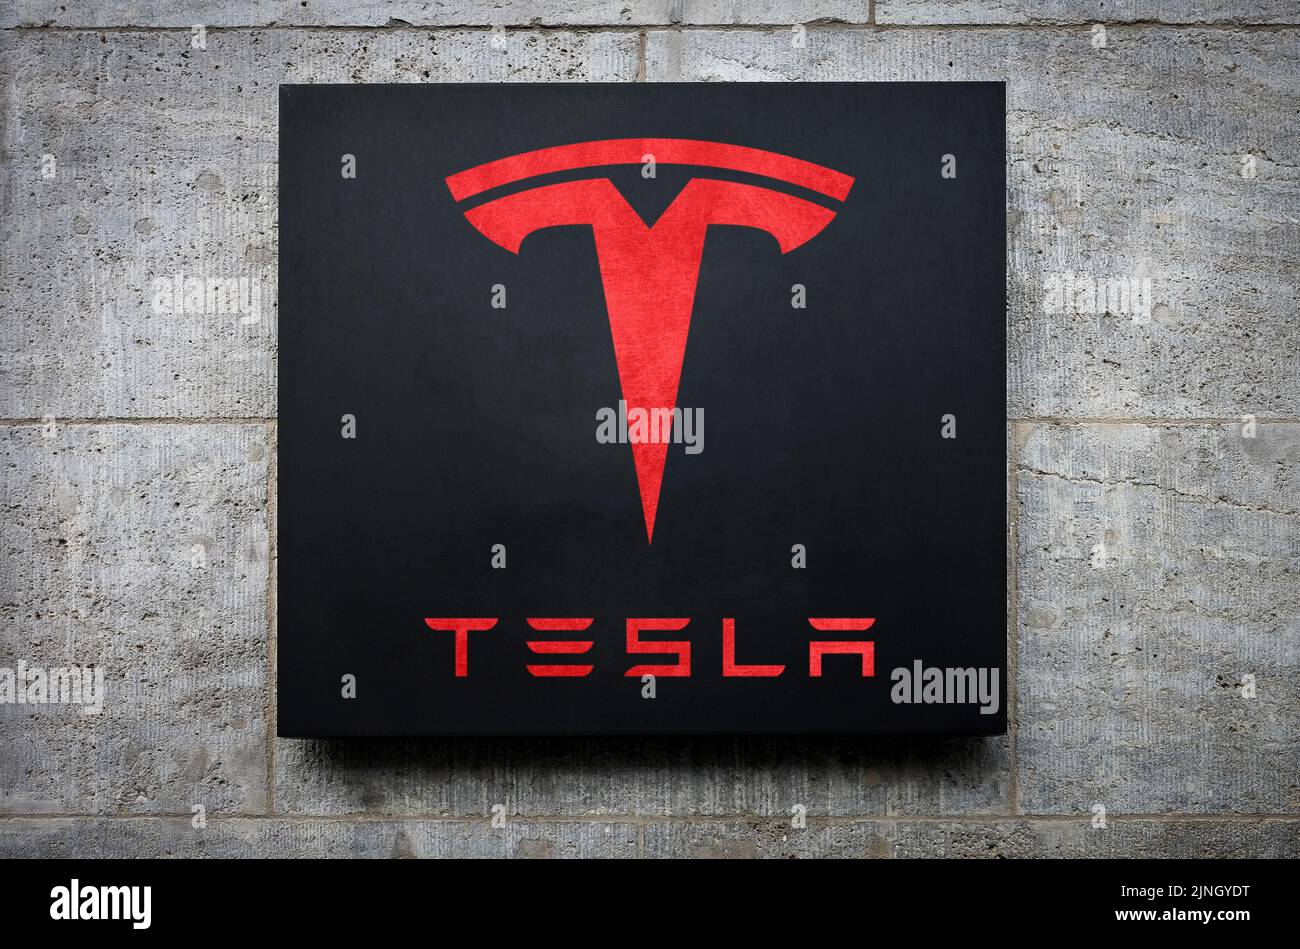 Tesla store logo Stock Photo